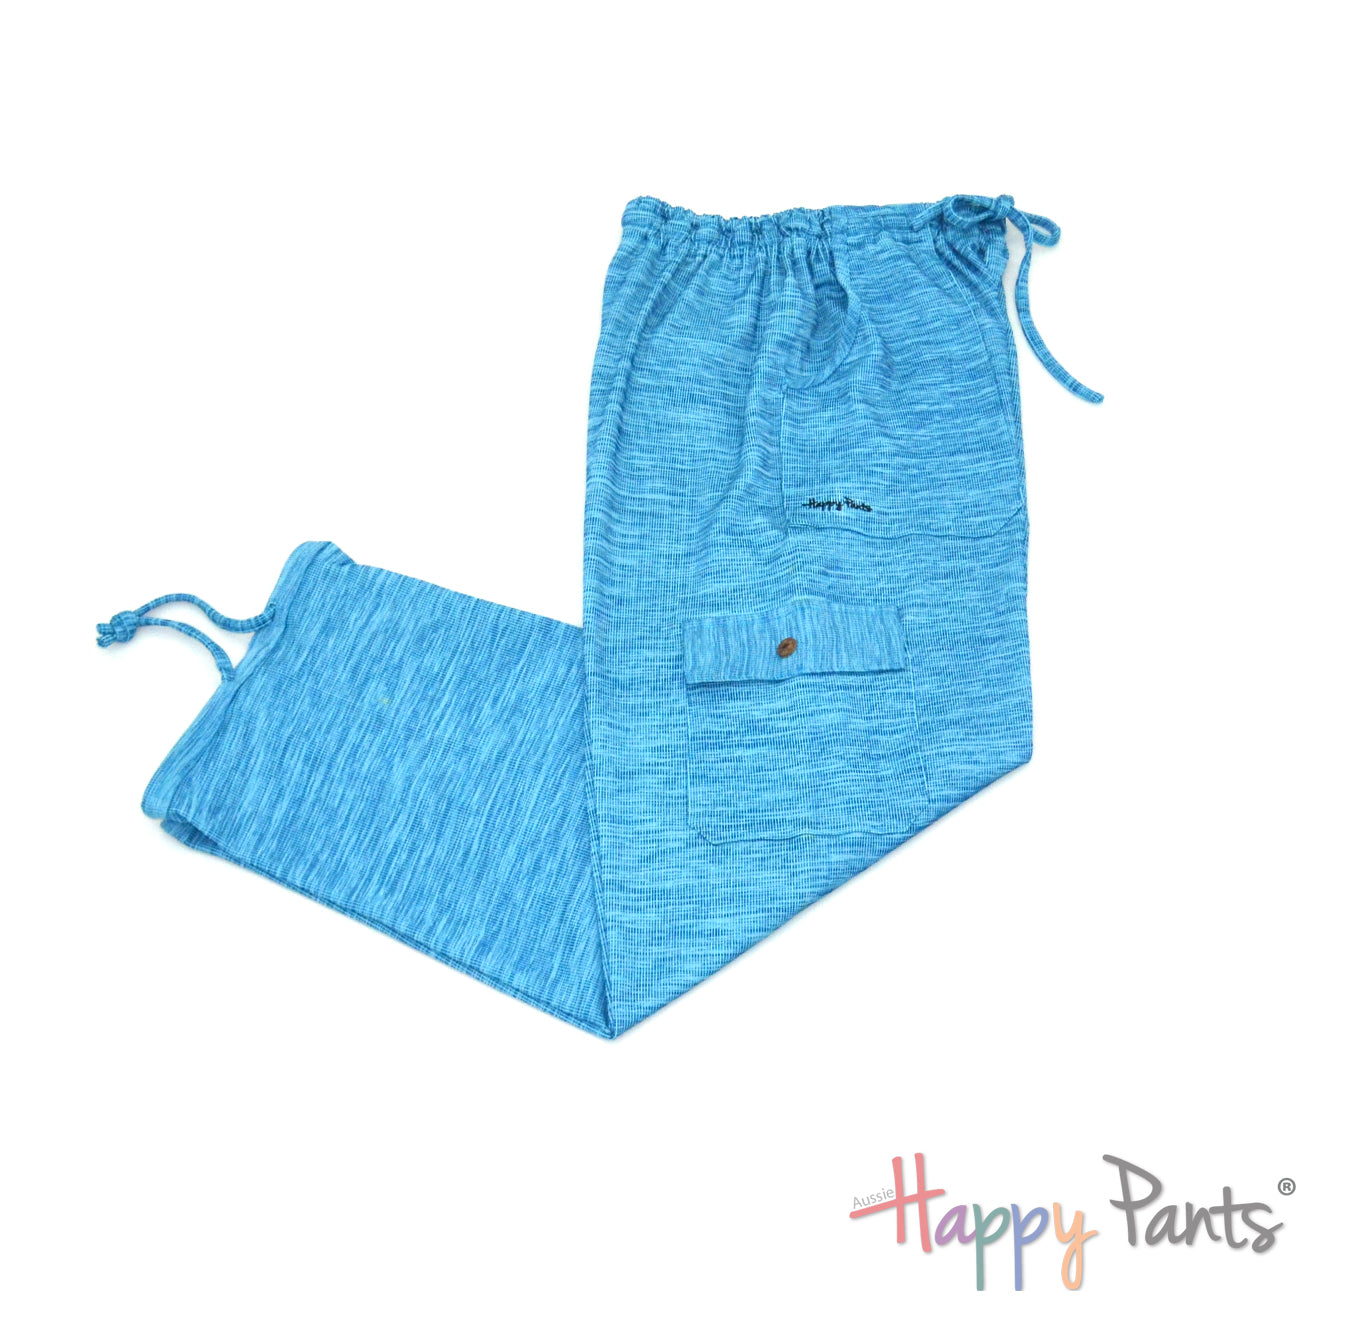 Aqua Blue Women pants elastic waist summer Happy Pants fun and colourful clothes